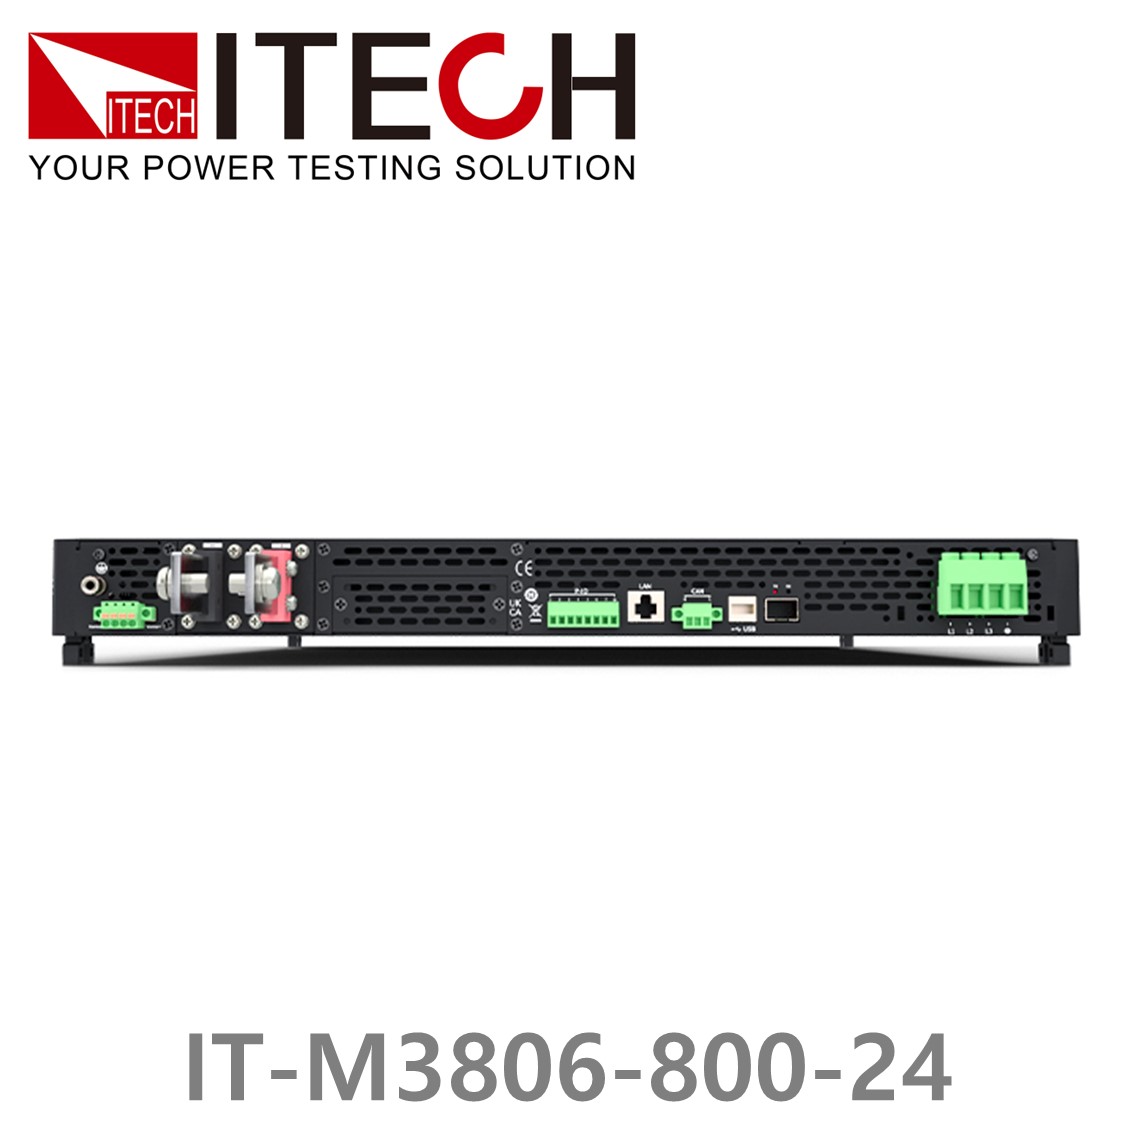 [ ITECH ] IT-M3806-800-24, 800V/24A/6000W DC 전자로드, DC전자부하기